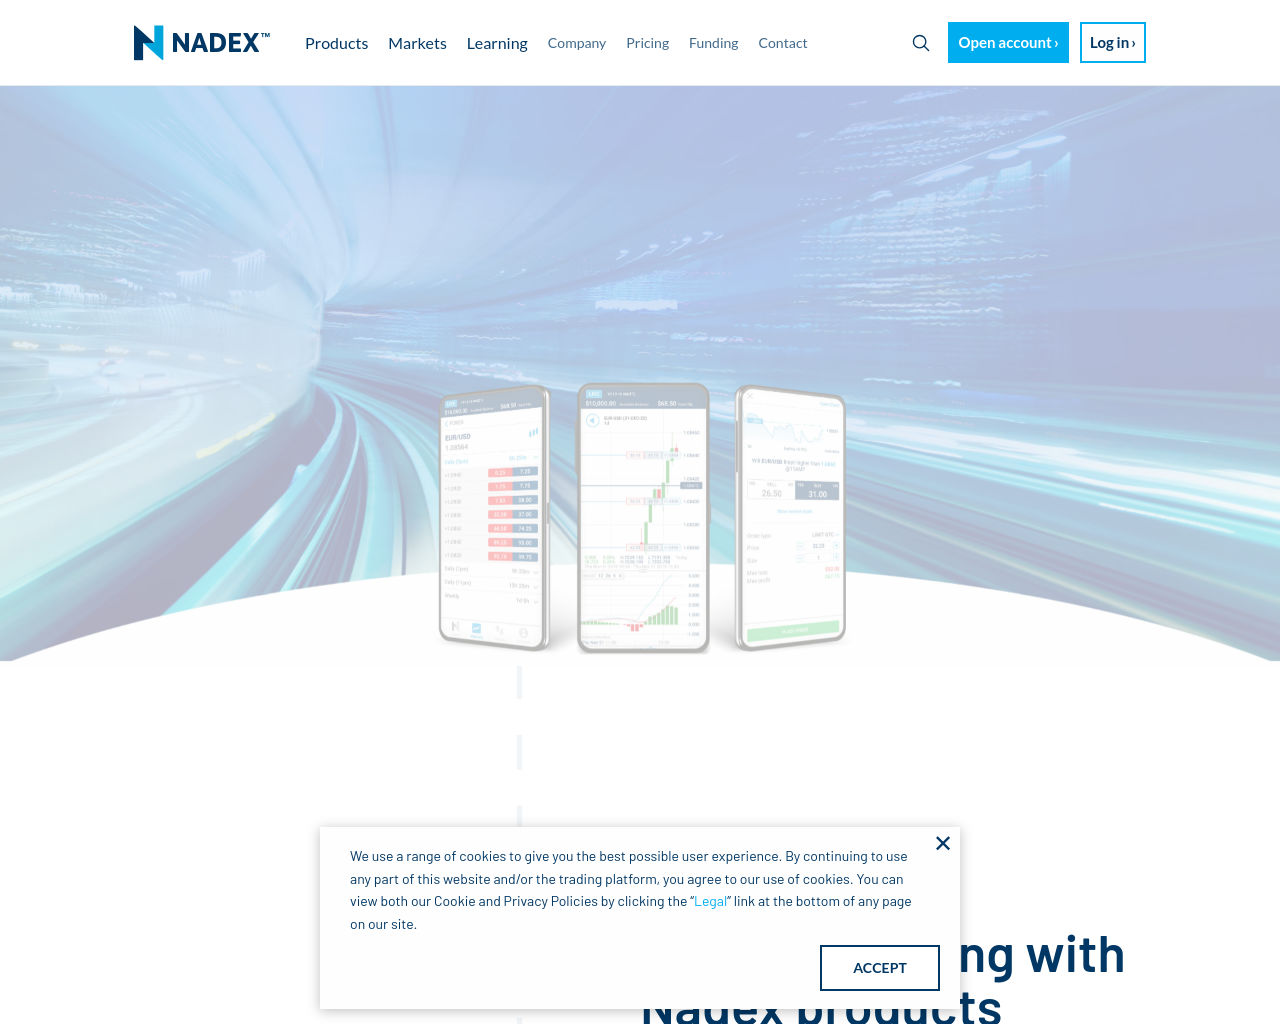 nadex.com